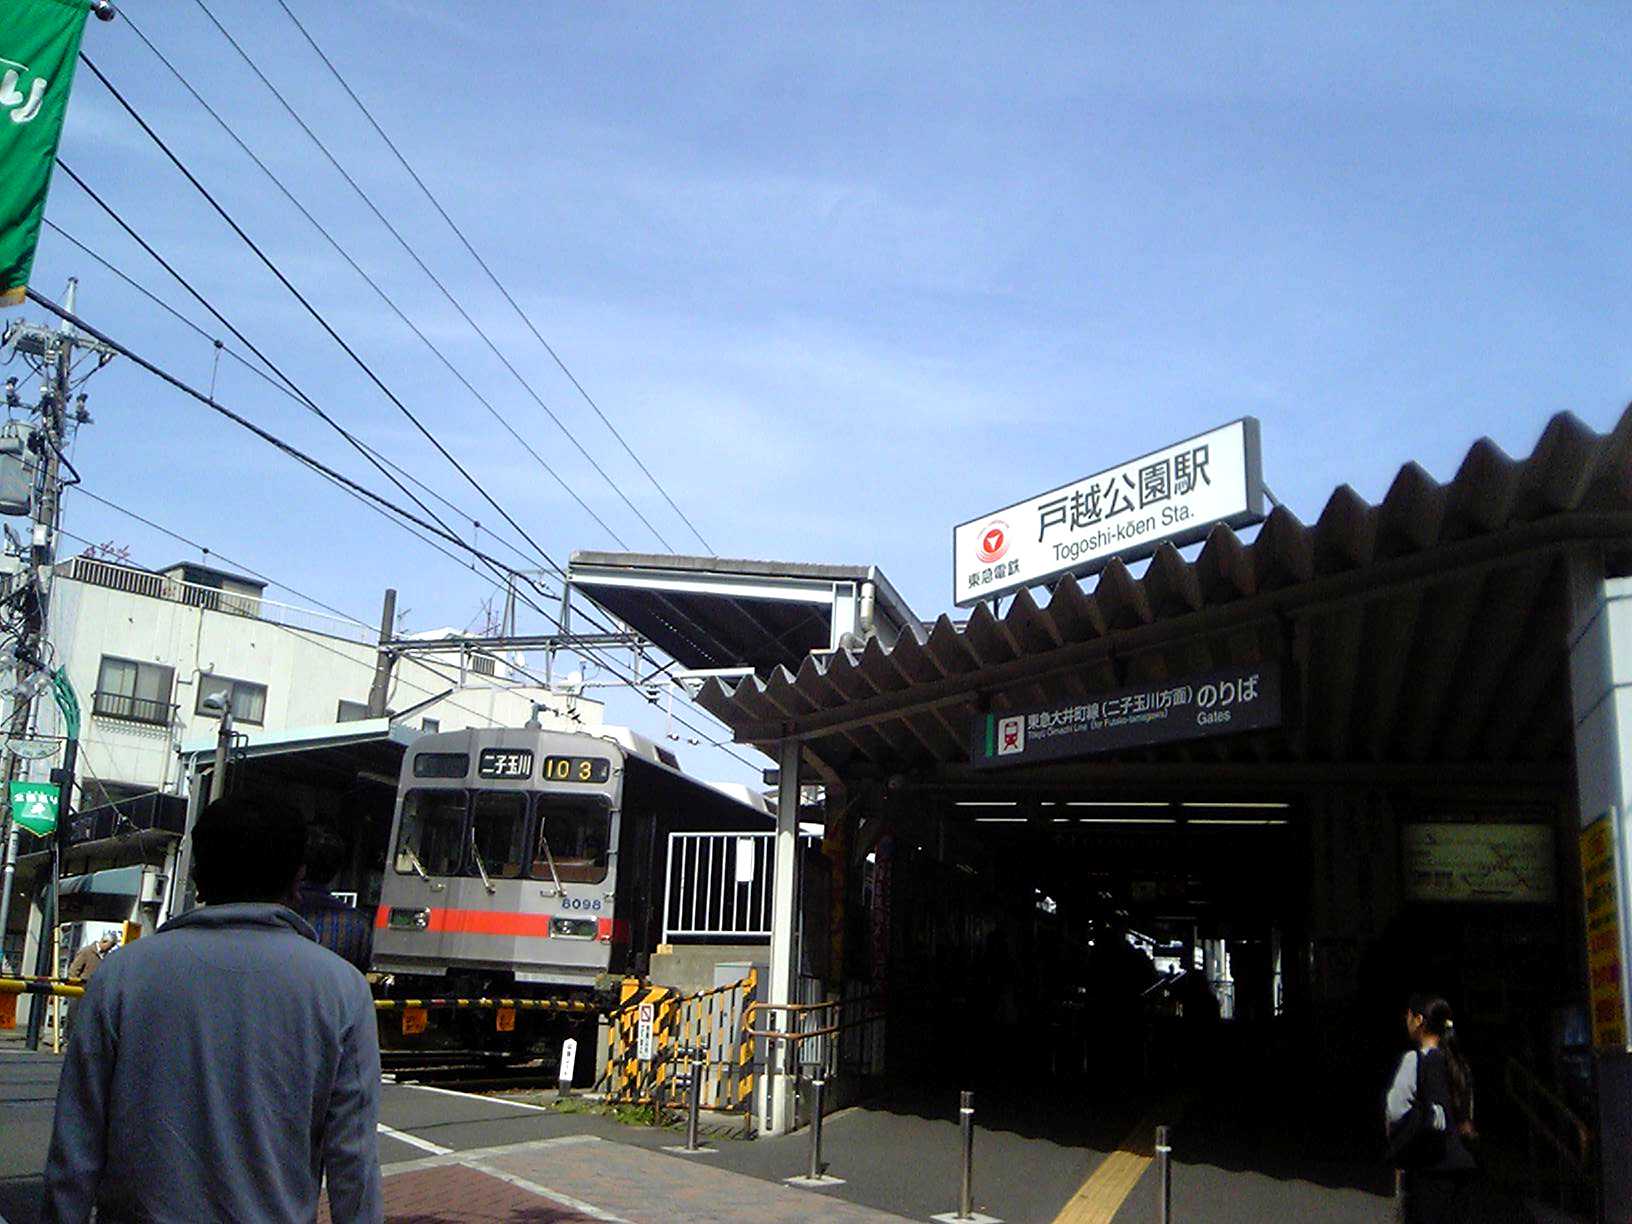 Stazione di Togoshi-kōen